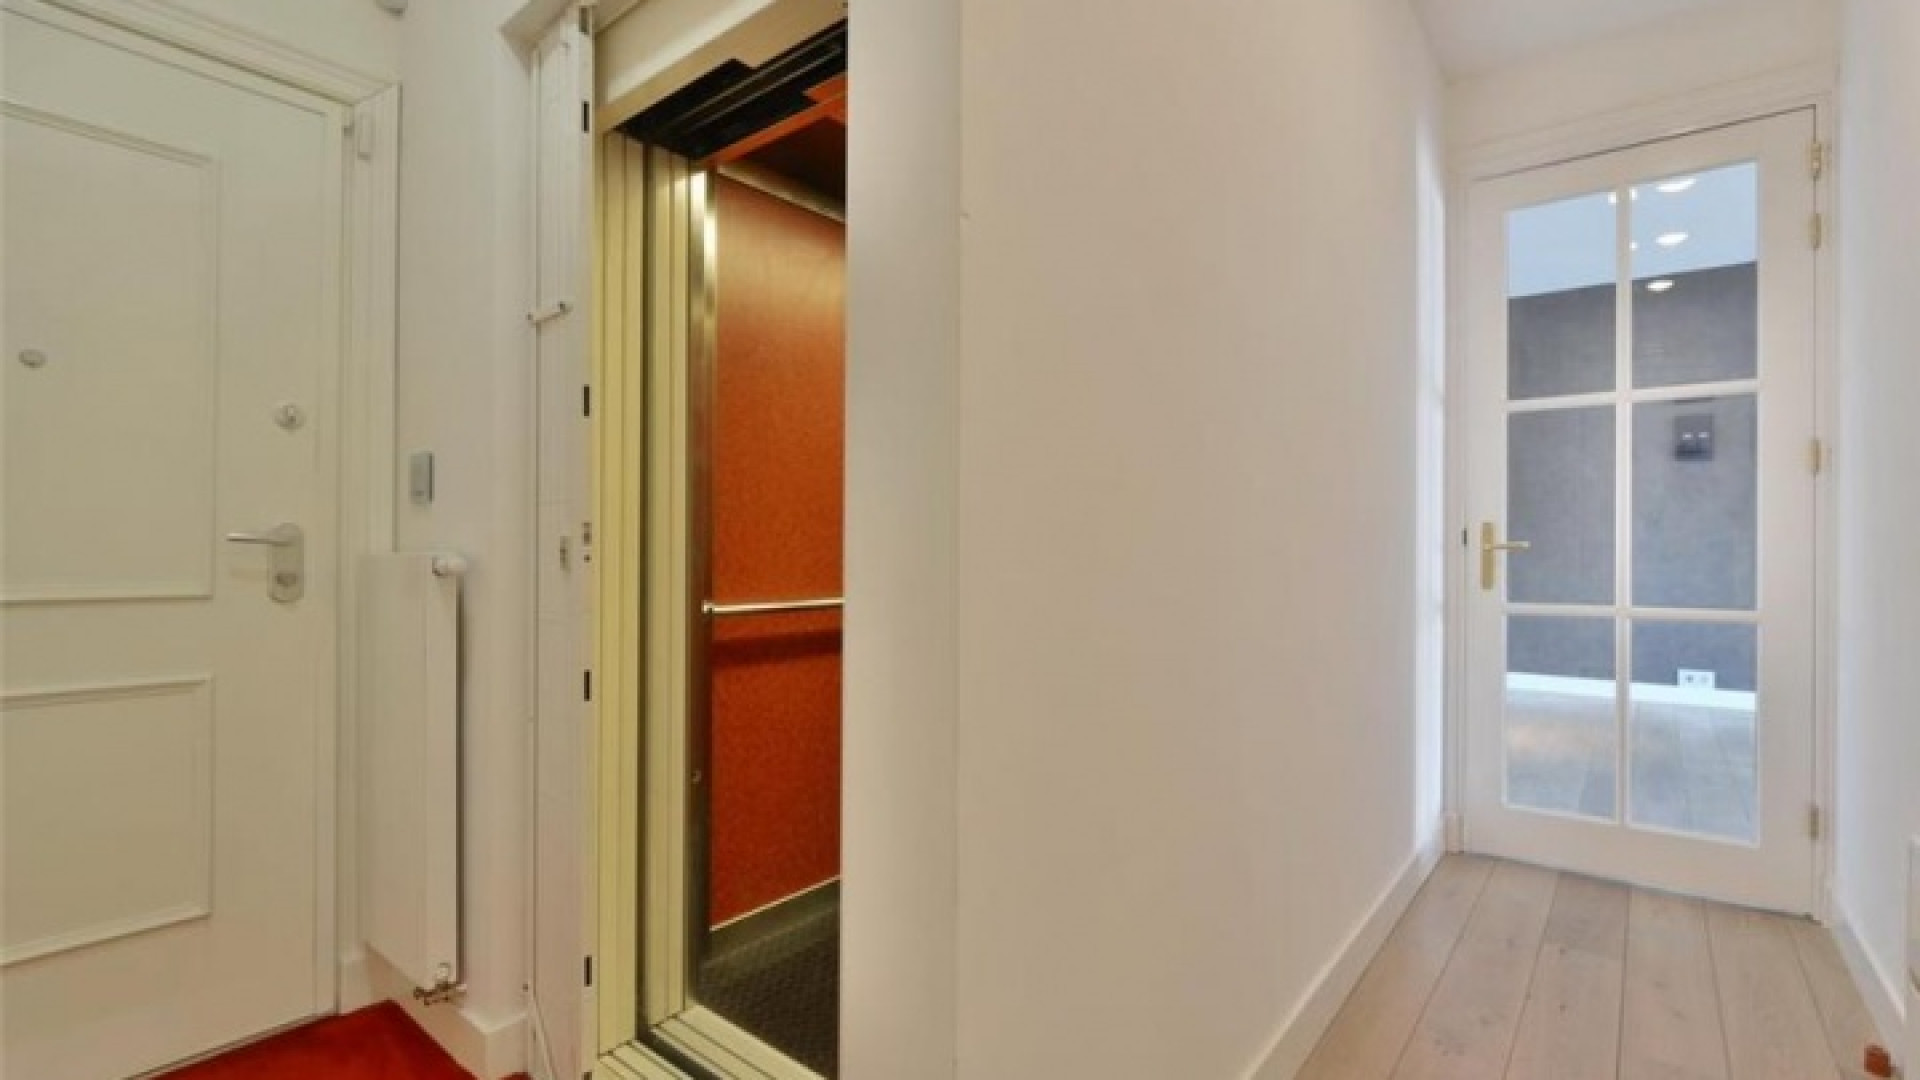 Frank Rijkaard zoekt huurder voor zijn luxe dubbele bovenhuis. Zie foto's 5